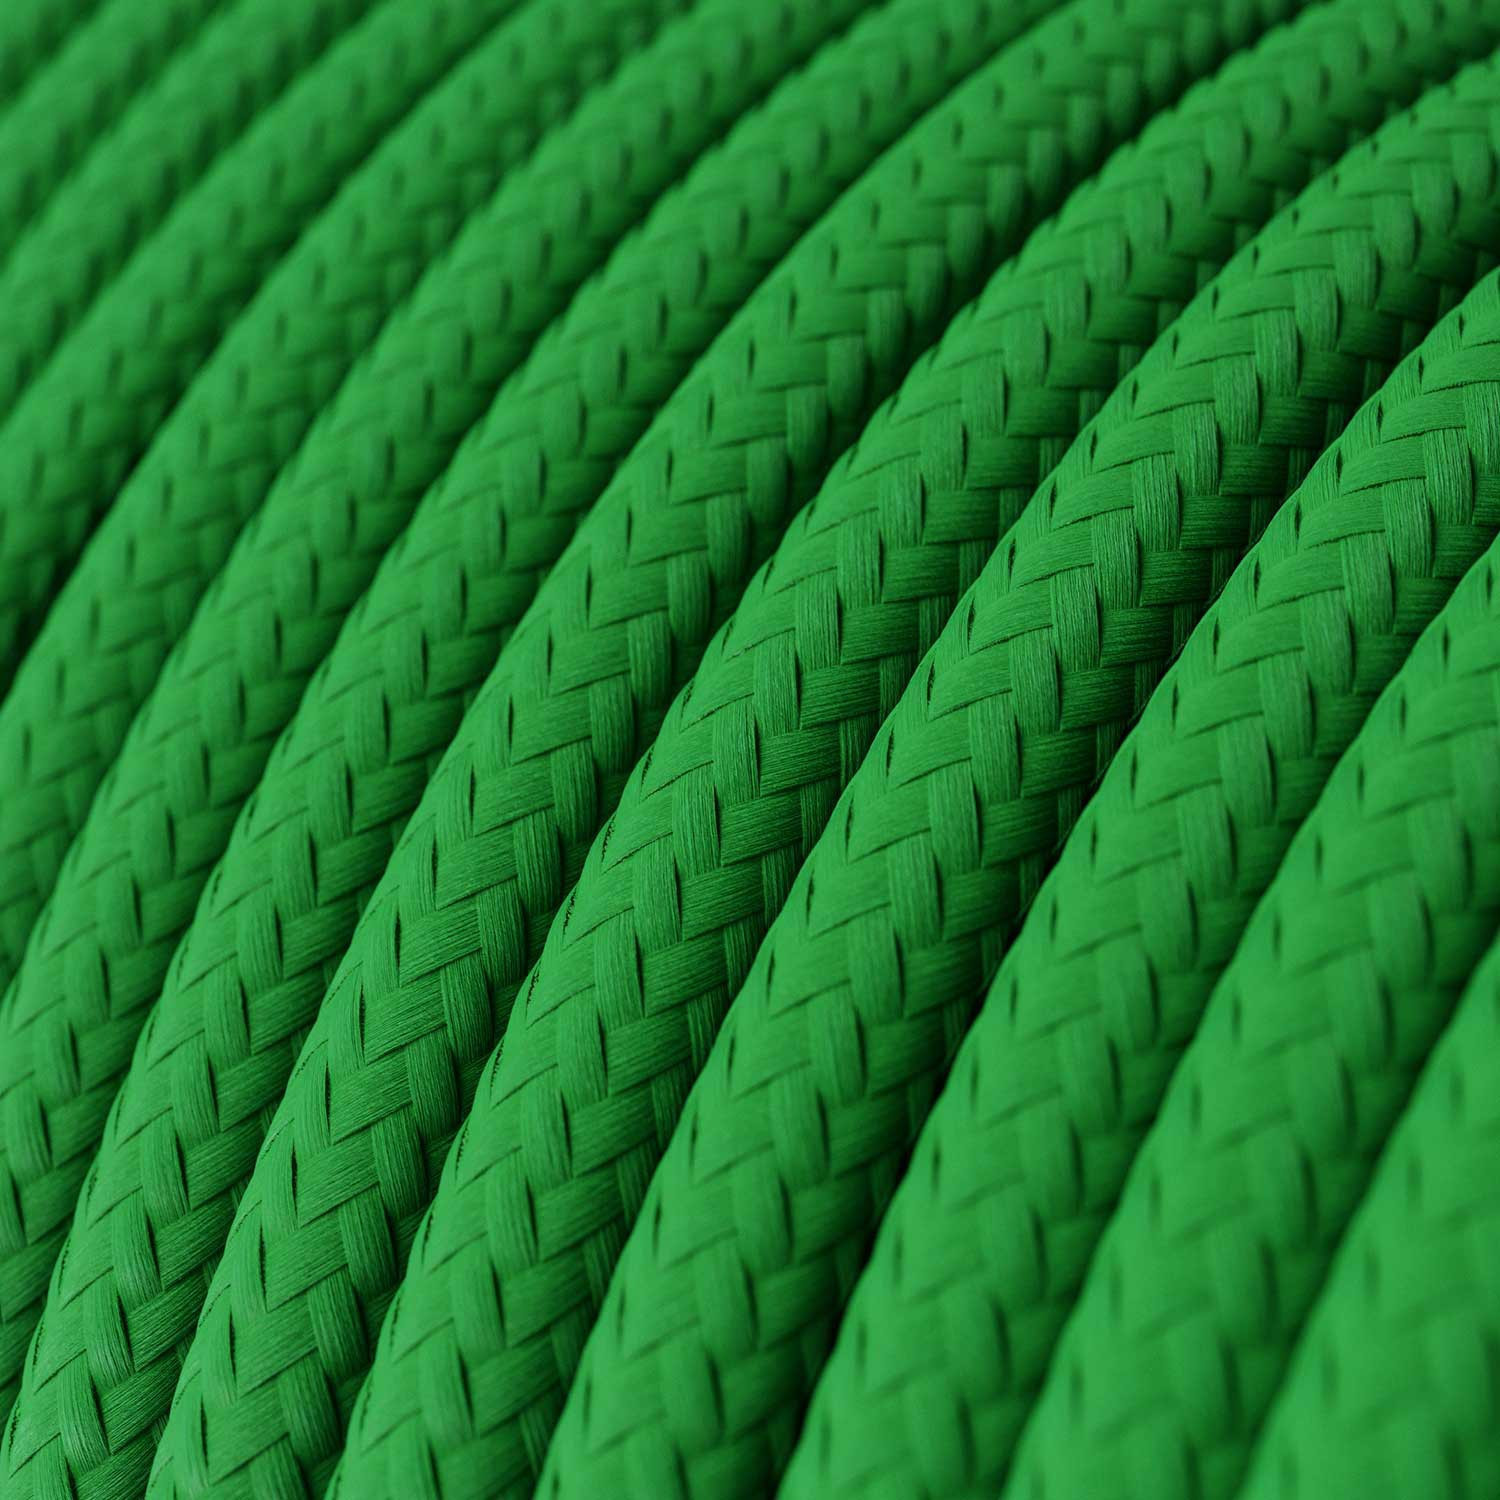 Cavo tessile Verde Prato lucido - L'Originale Creative-Cables - RM06 rotondo 2x0,75mm / 3x0,75mm